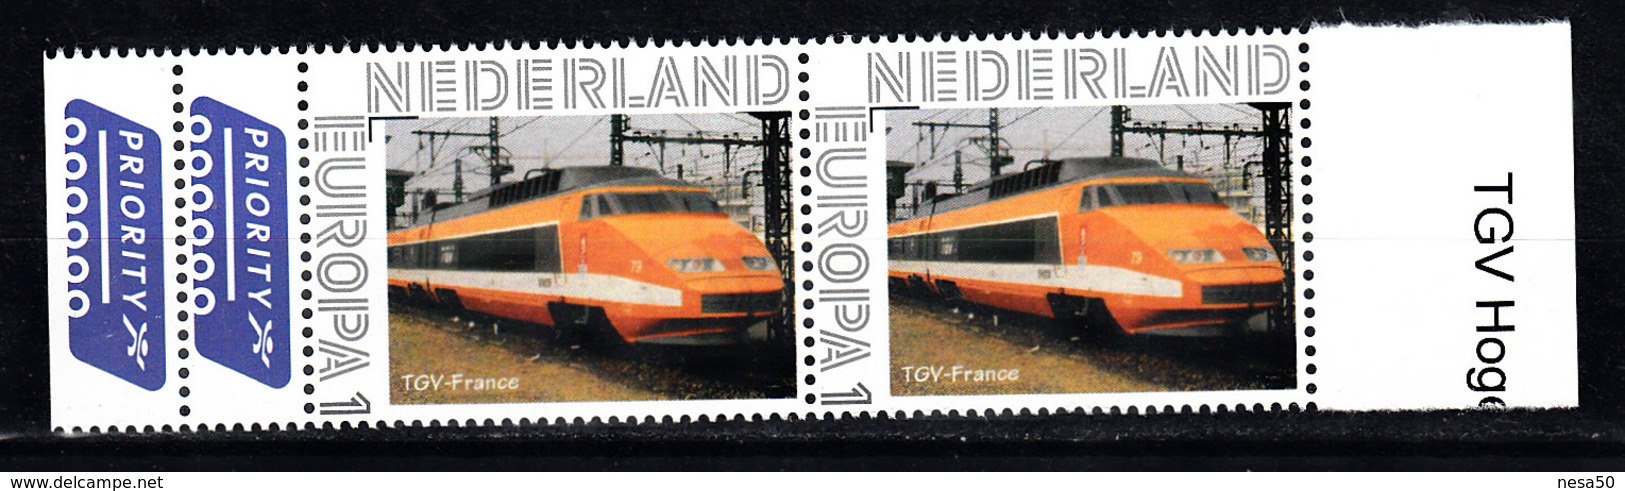 Nederland Persoonlijke Europa Zegel: Trein, Train, TGV France - Treinen